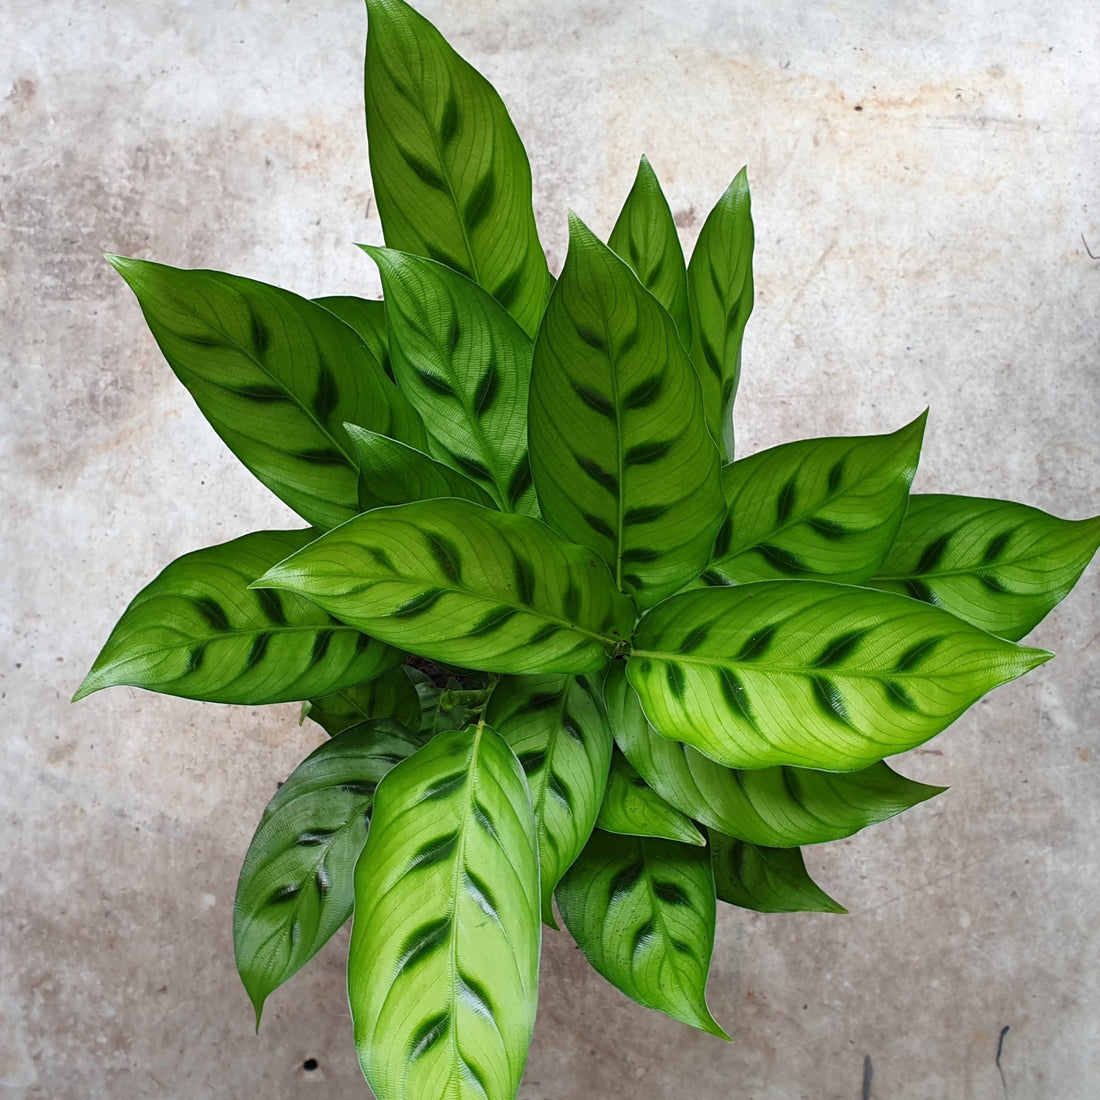 Goeppertia concinna syn. Calathea leopardina (Prayer Plant)